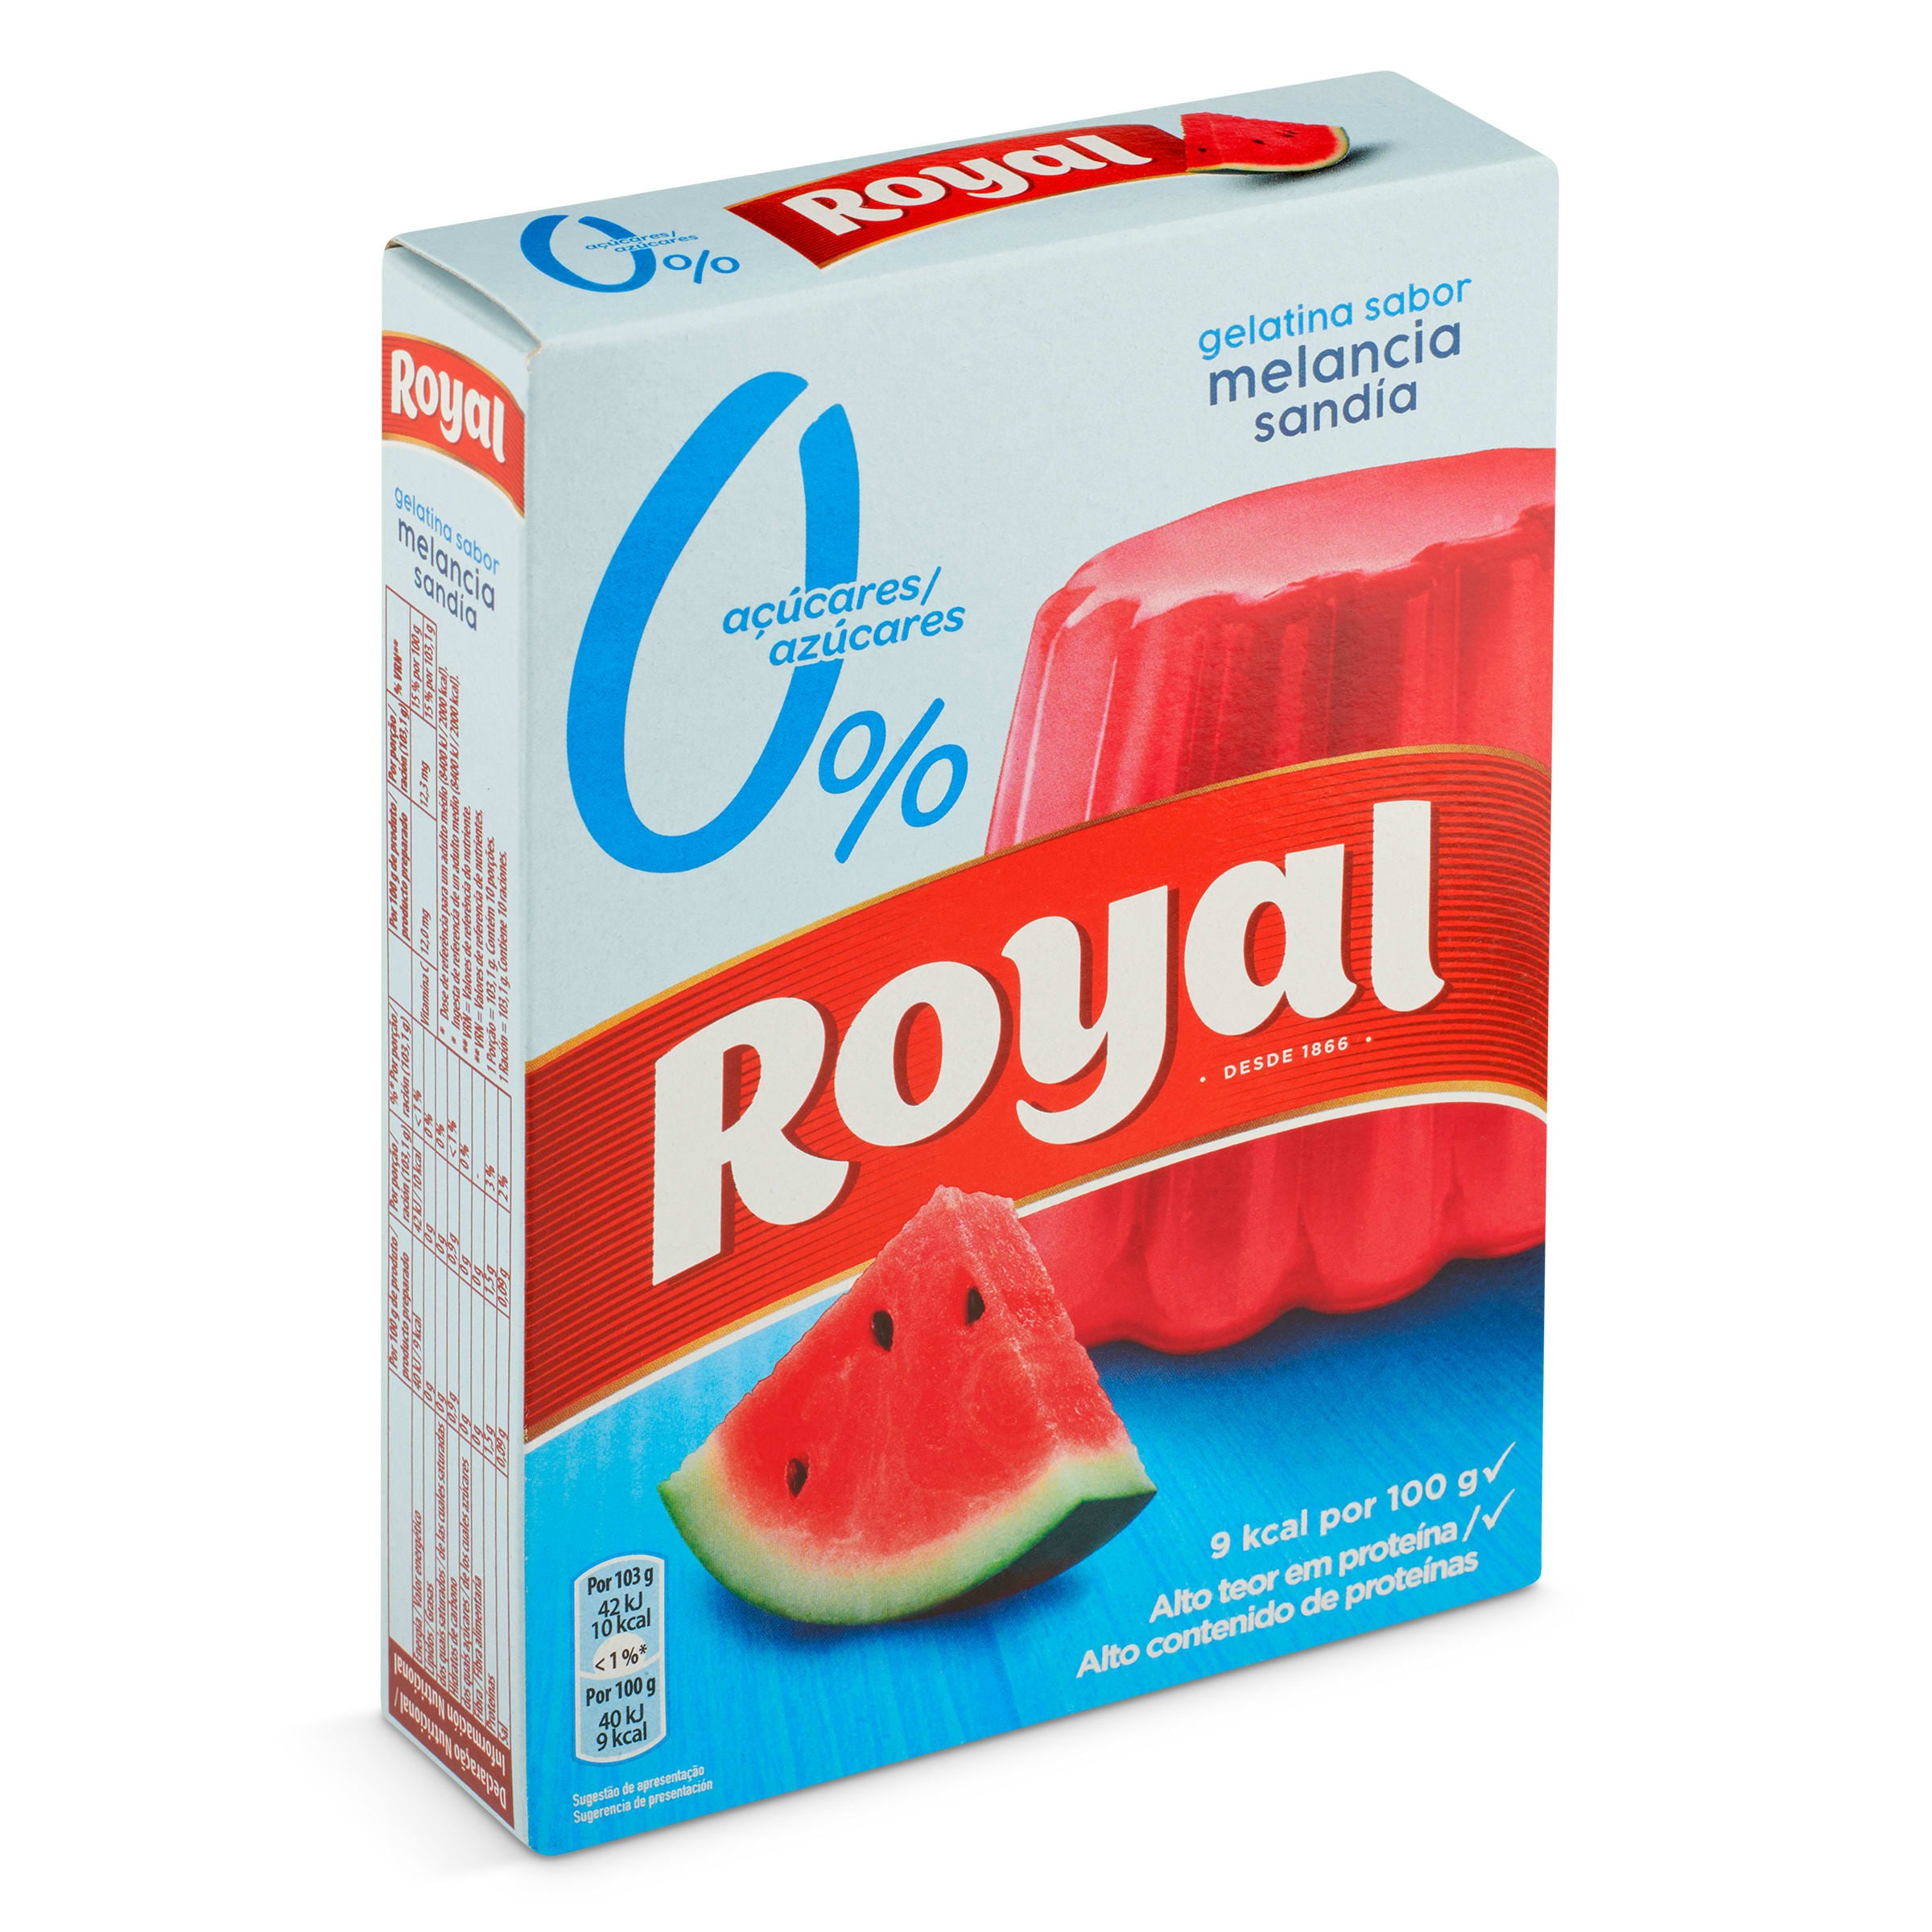 Gelatina sabor sandía sin azúcar Royal caja 31 g - Supermercados DIA